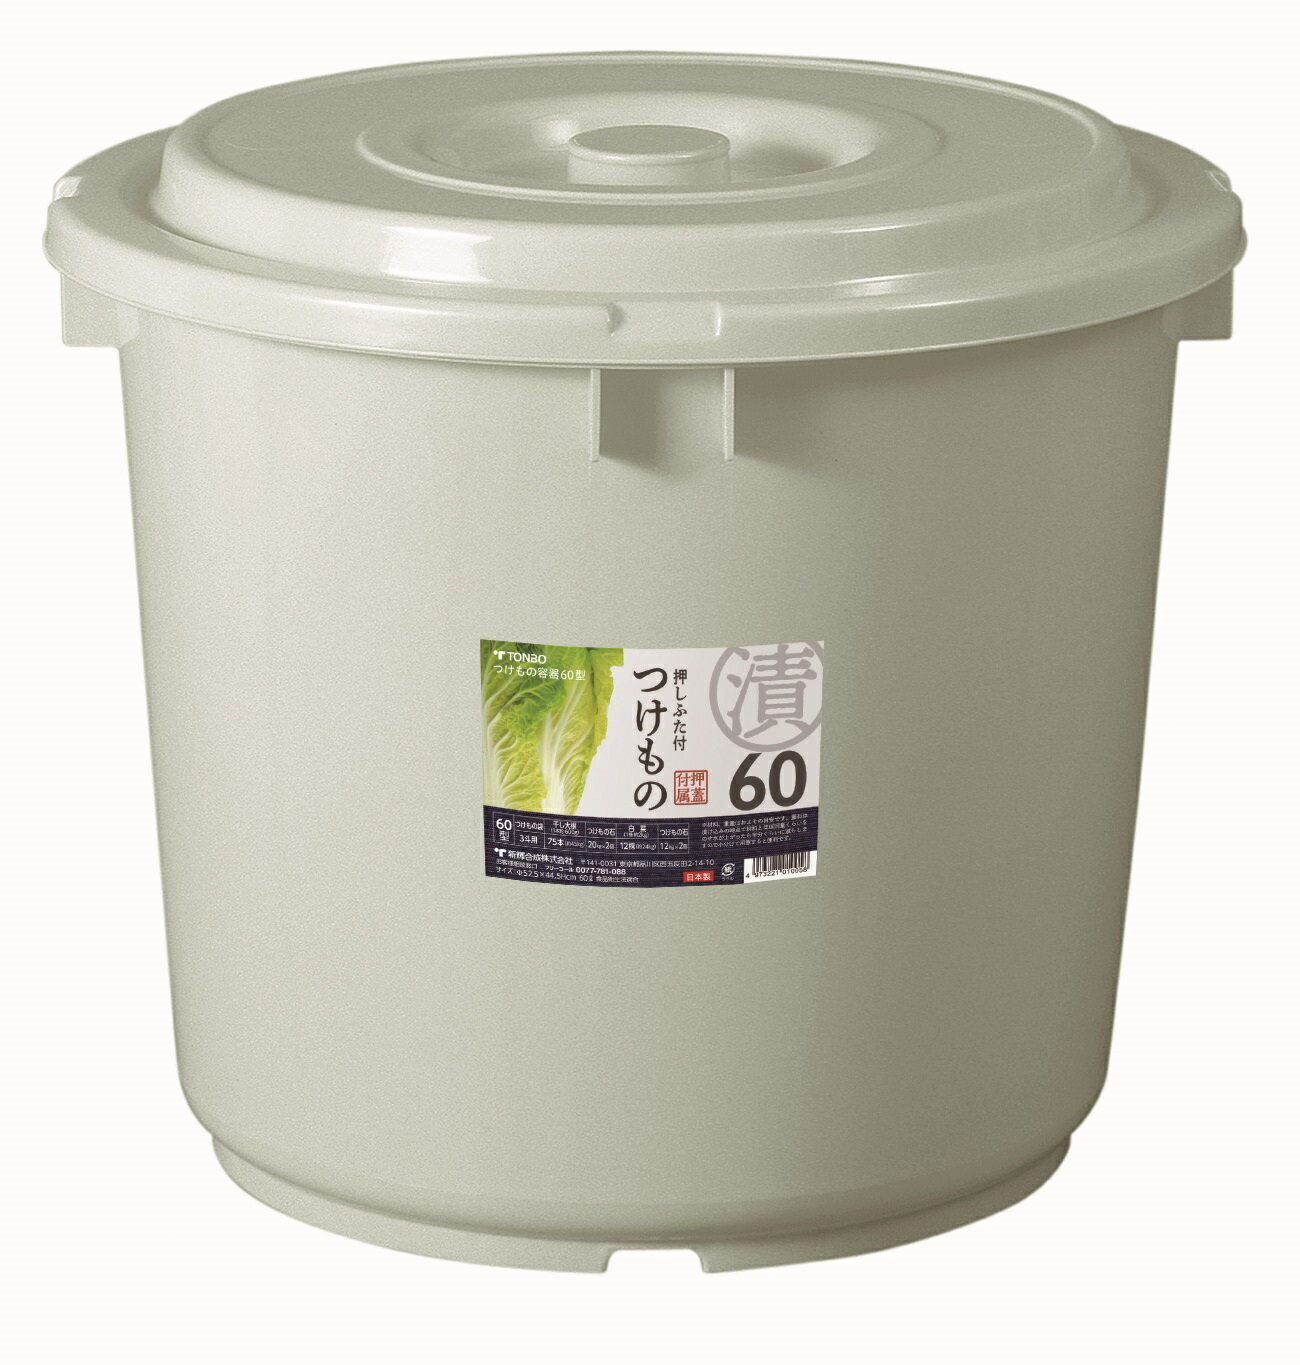 トンボ 漬物容器 60型 （グレー色）食品衛生法適合品 60リットル 大容量 漬物樽 漬物 漬け物 つけもの つけもの容器 漬物樽 保存用